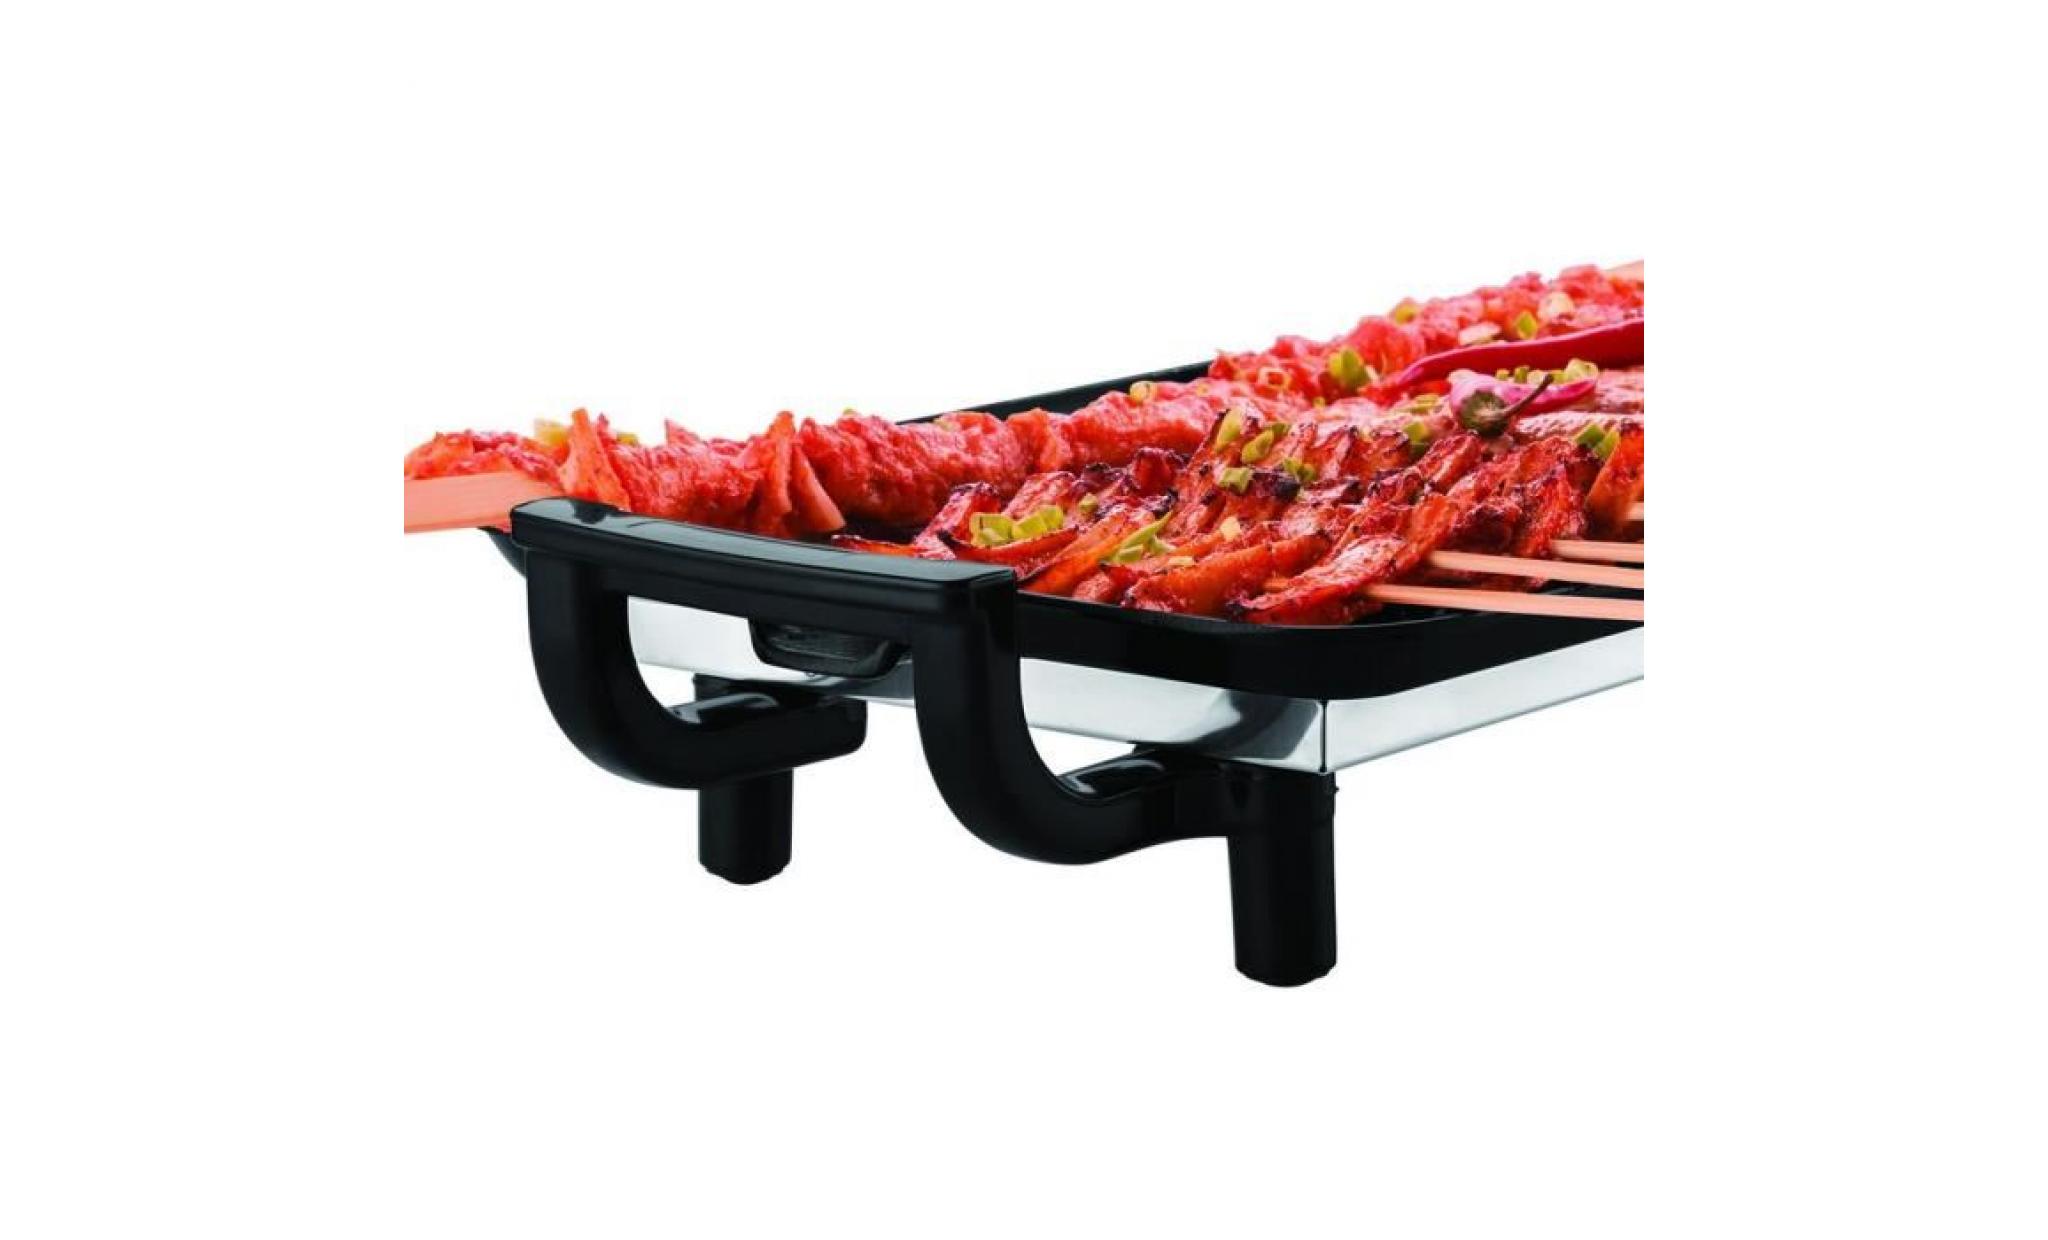 gril électrique portable barbecue anti adhésif table de cuisson plaque chauffante d'ébullition table top + bbq étanche cover 170cm pas cher